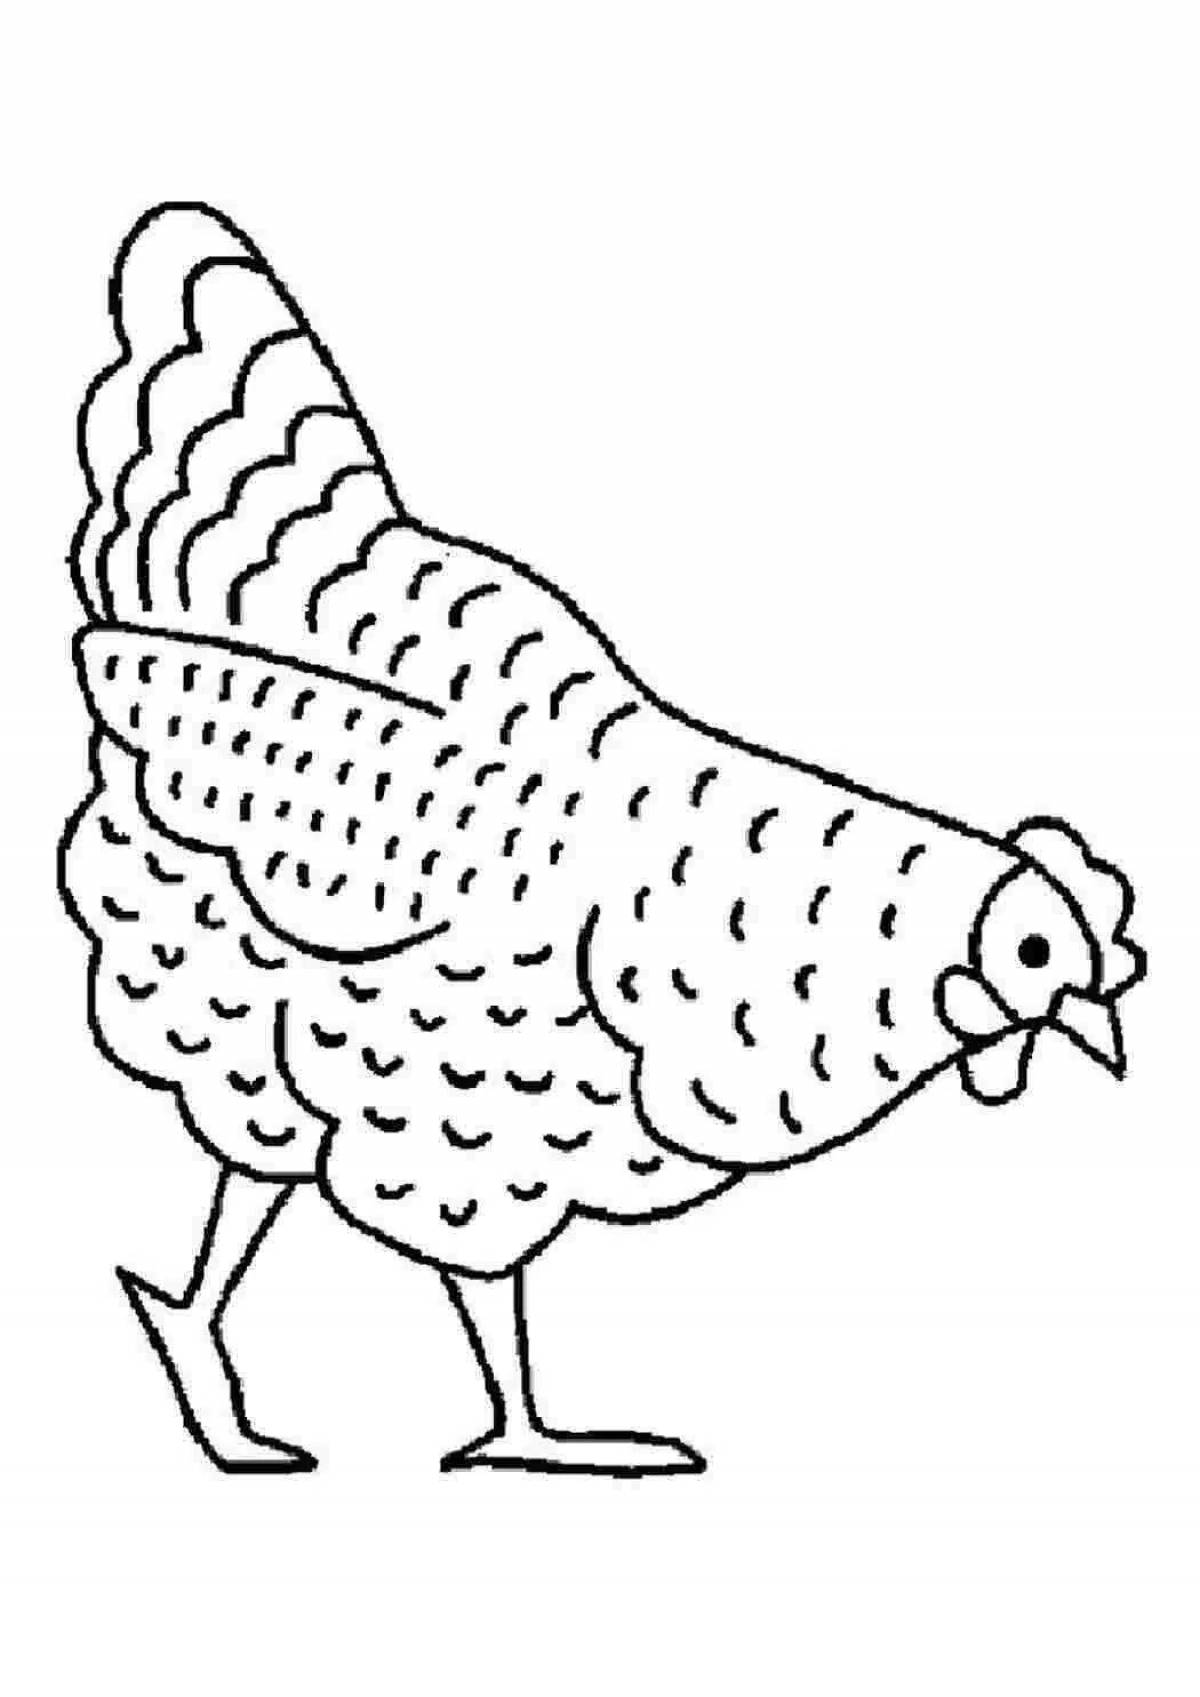 Увлекательная раскраска цыпленка для детей